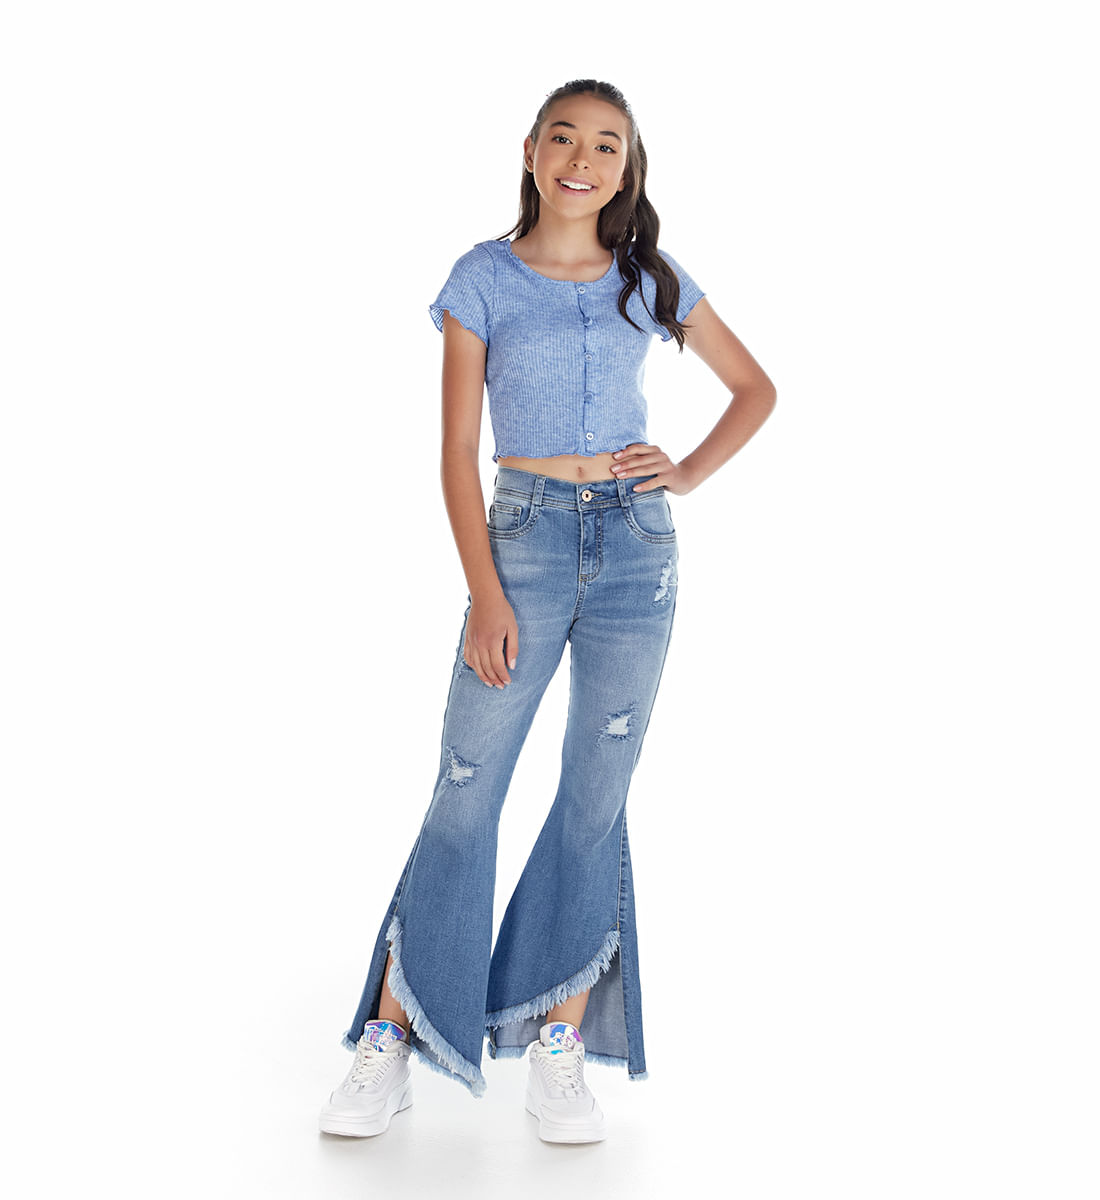 once Encantada de conocerte jardín Jeans de moda para niñas y adolescentes | Yoyo Jeans - yoyojeans